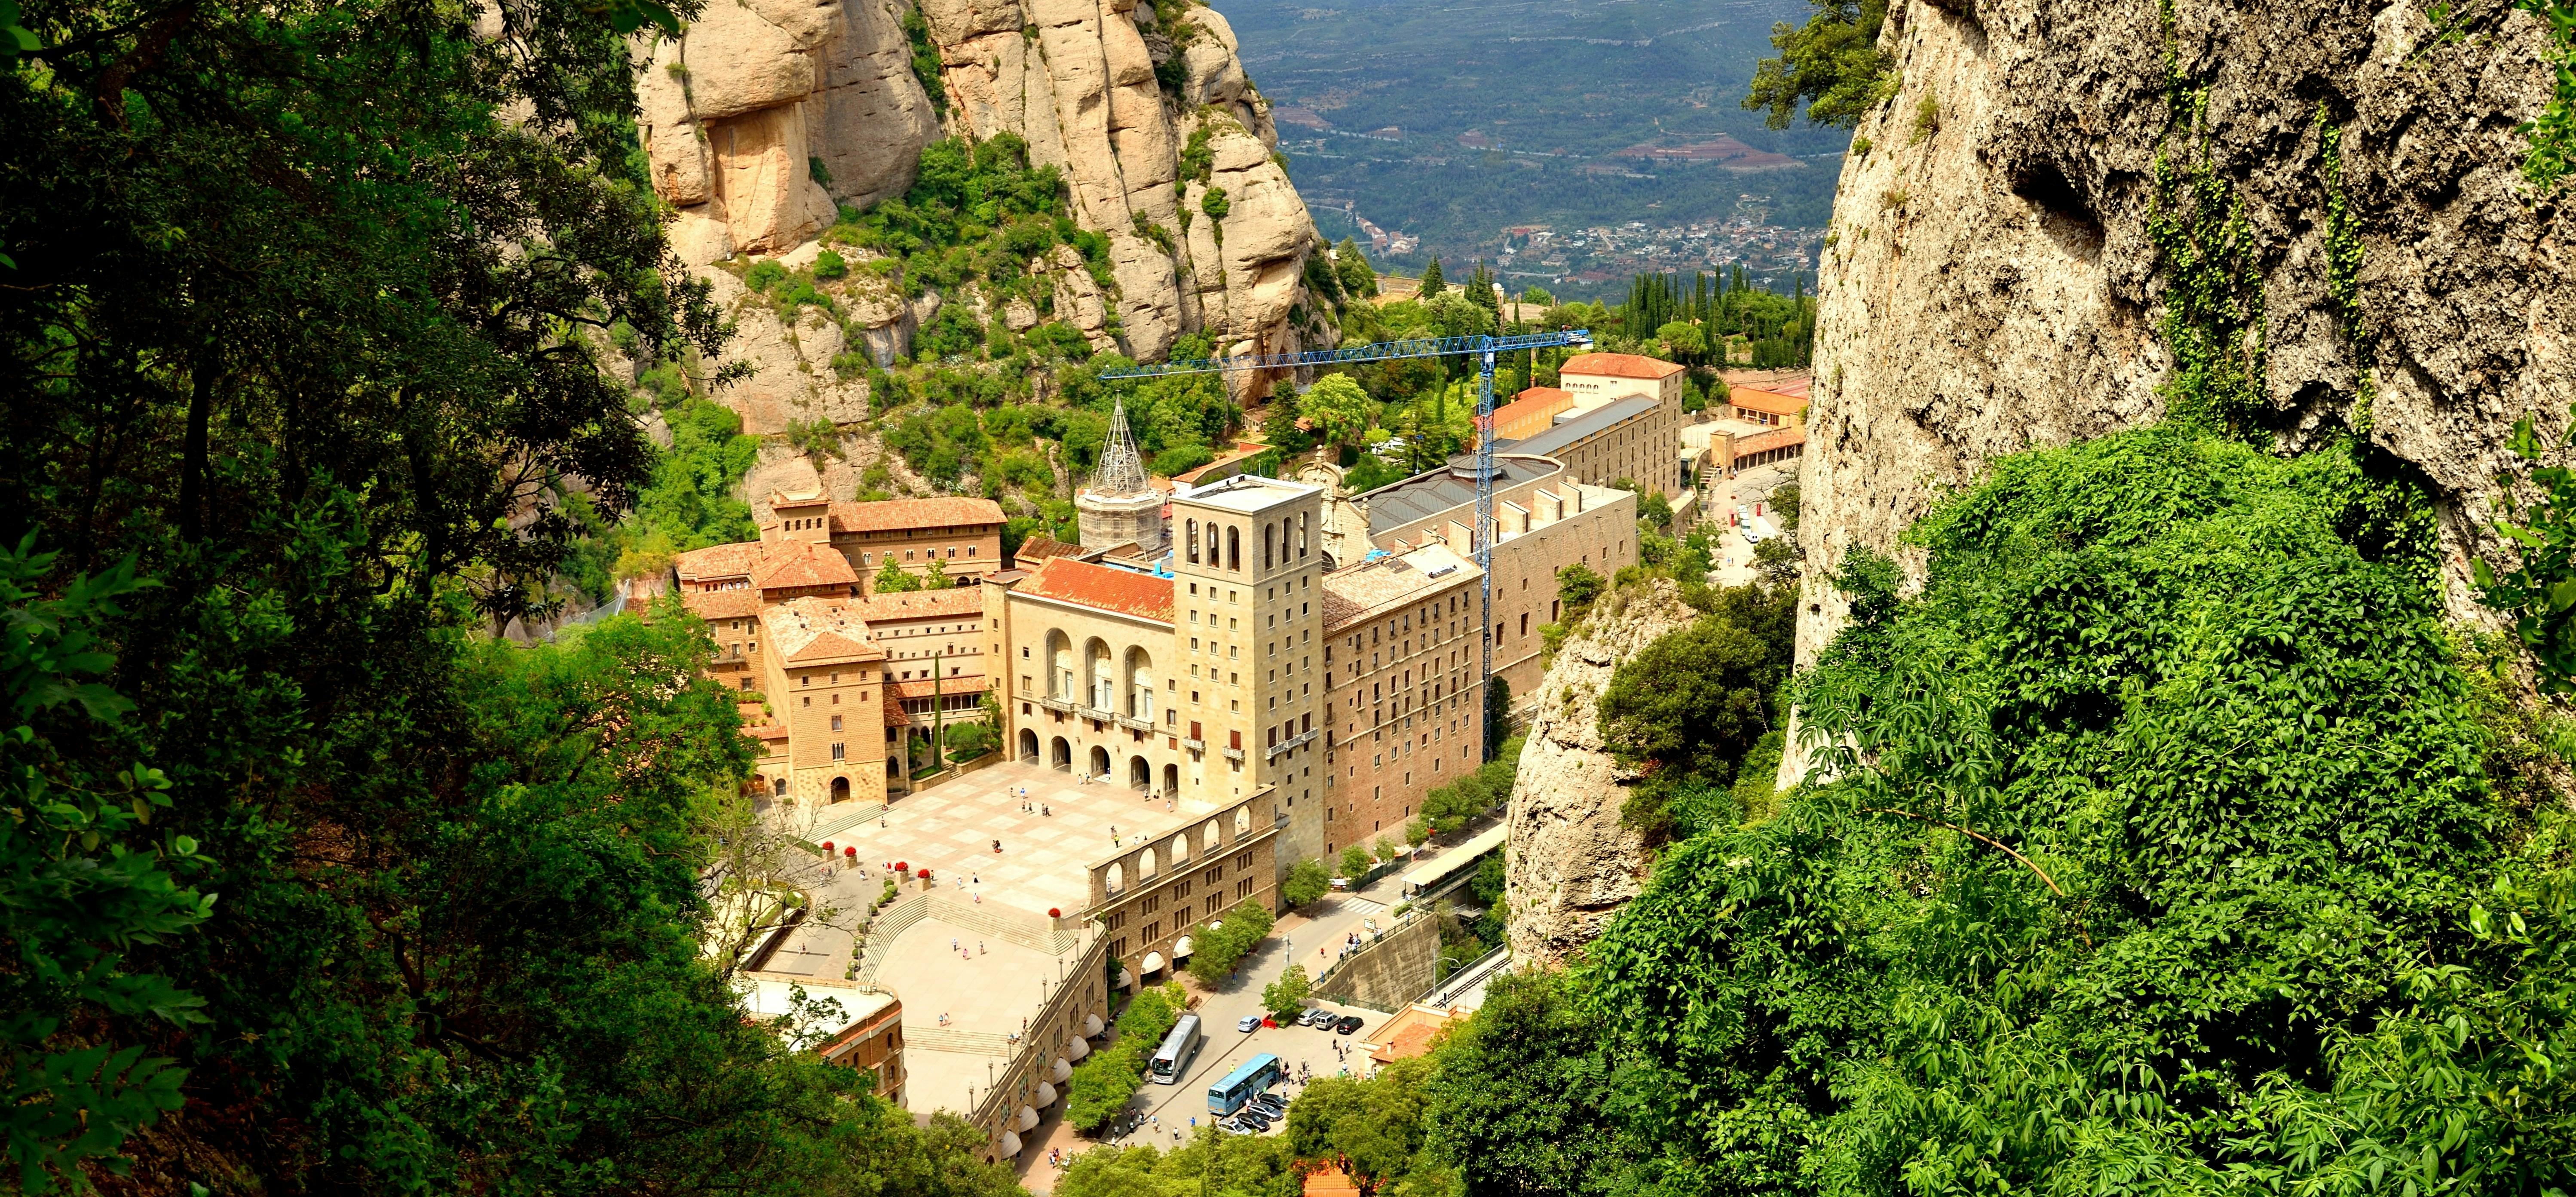 Visita guiada matinal ao Mosteiro de Montserrat